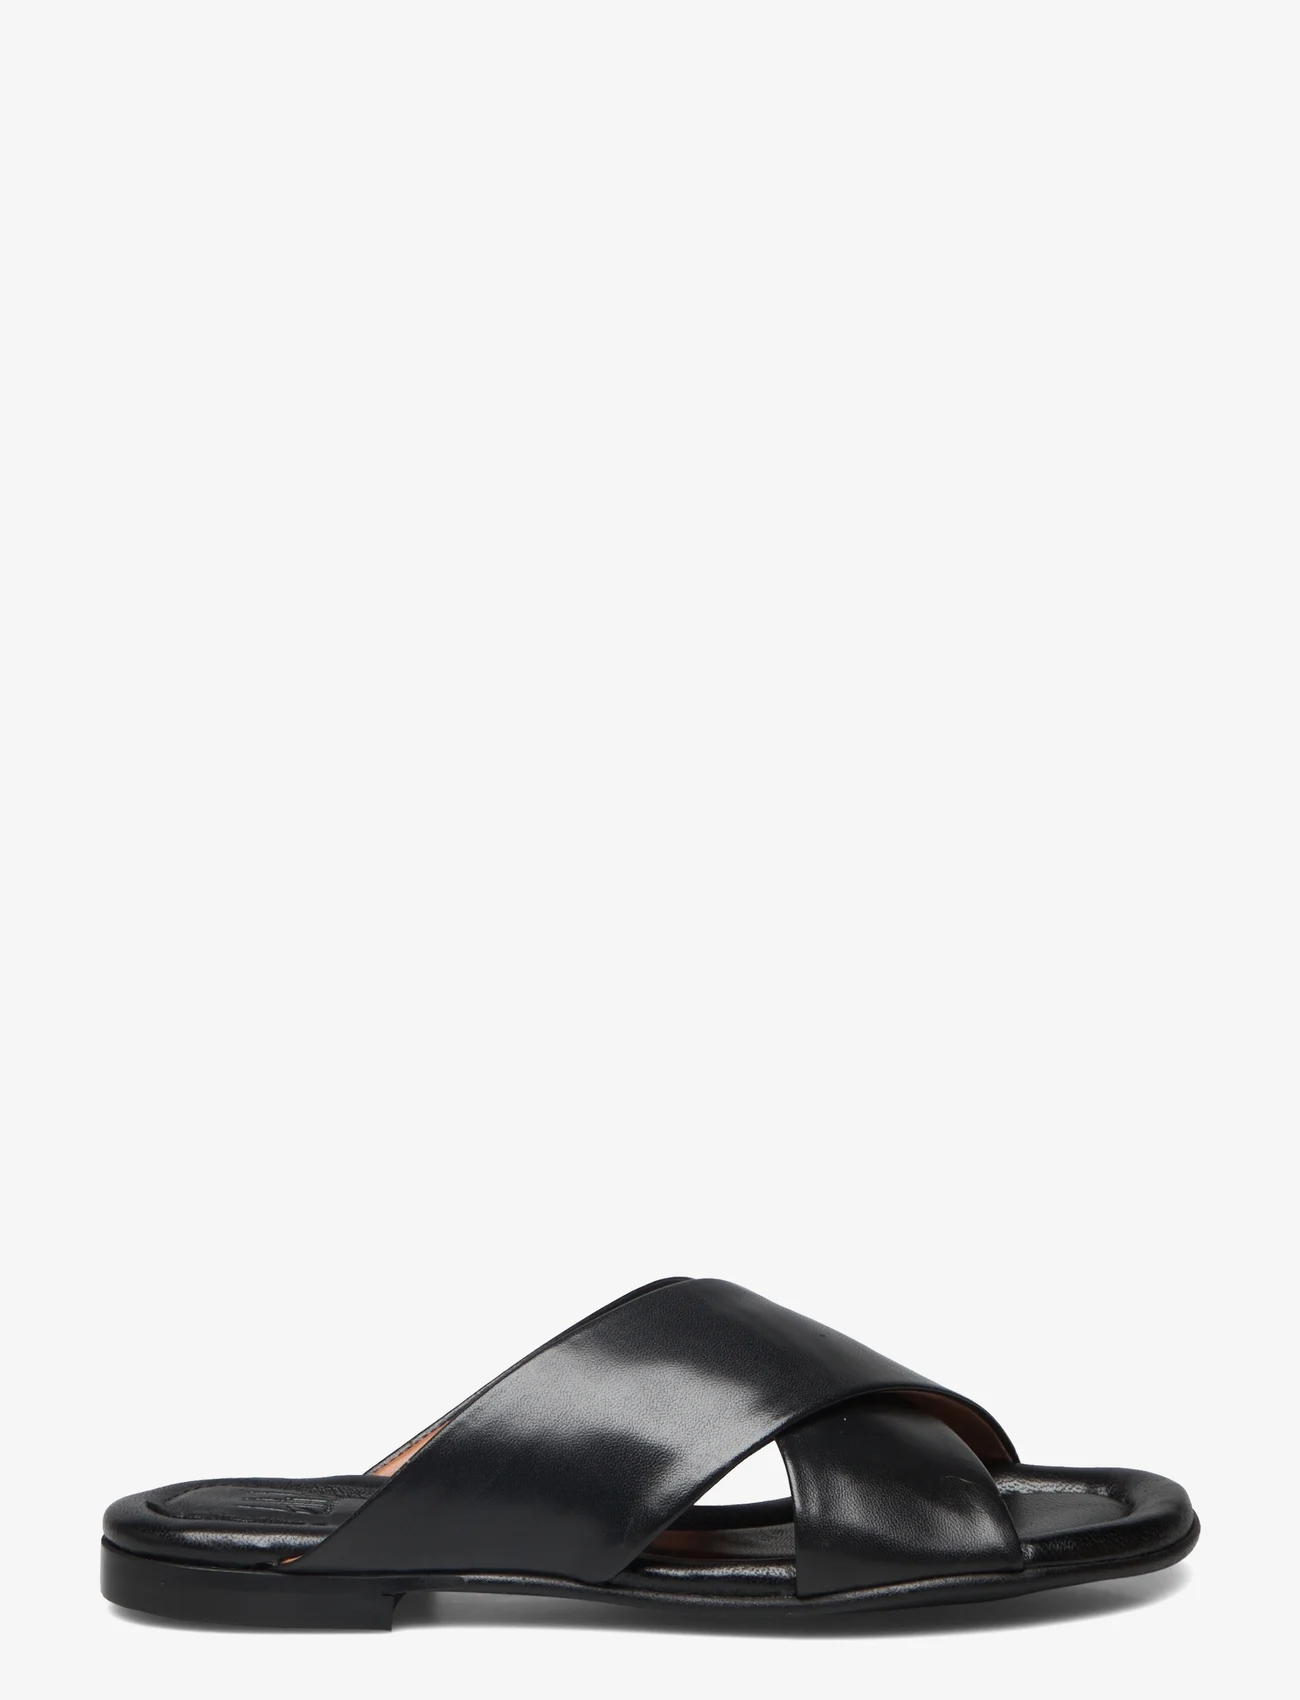 Billi Bi - Sandals - flat sandals - black nappa 70 - 1